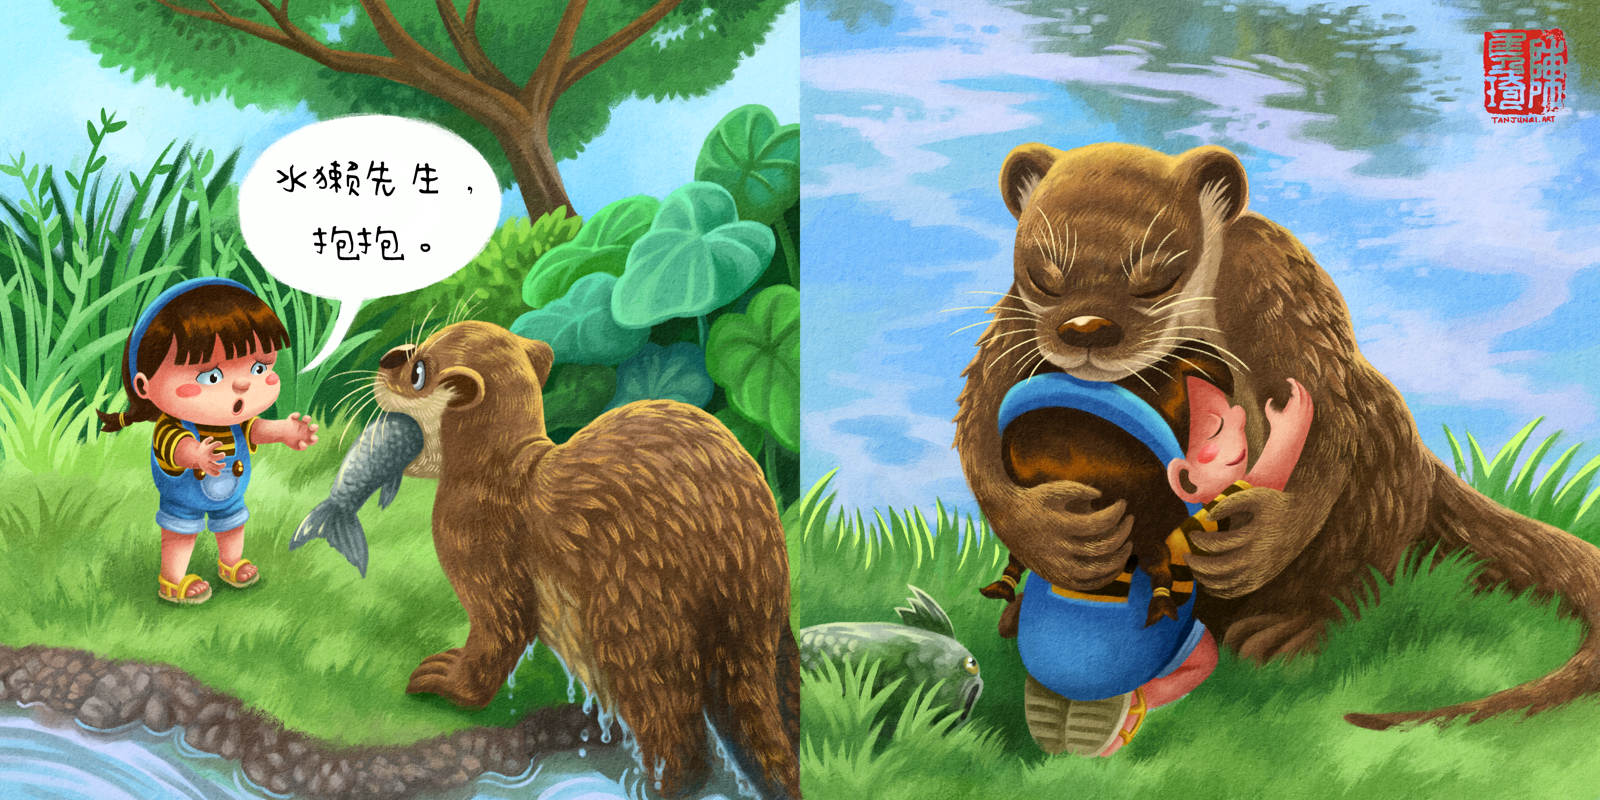 《珊珊抱抱》儿童绘本中的两页绘画(中文版)。第一页：珊珊对着刚从水里抓了鱼的水獭先生，说她要抱抱。第二页：他们坐在河边抱抱。